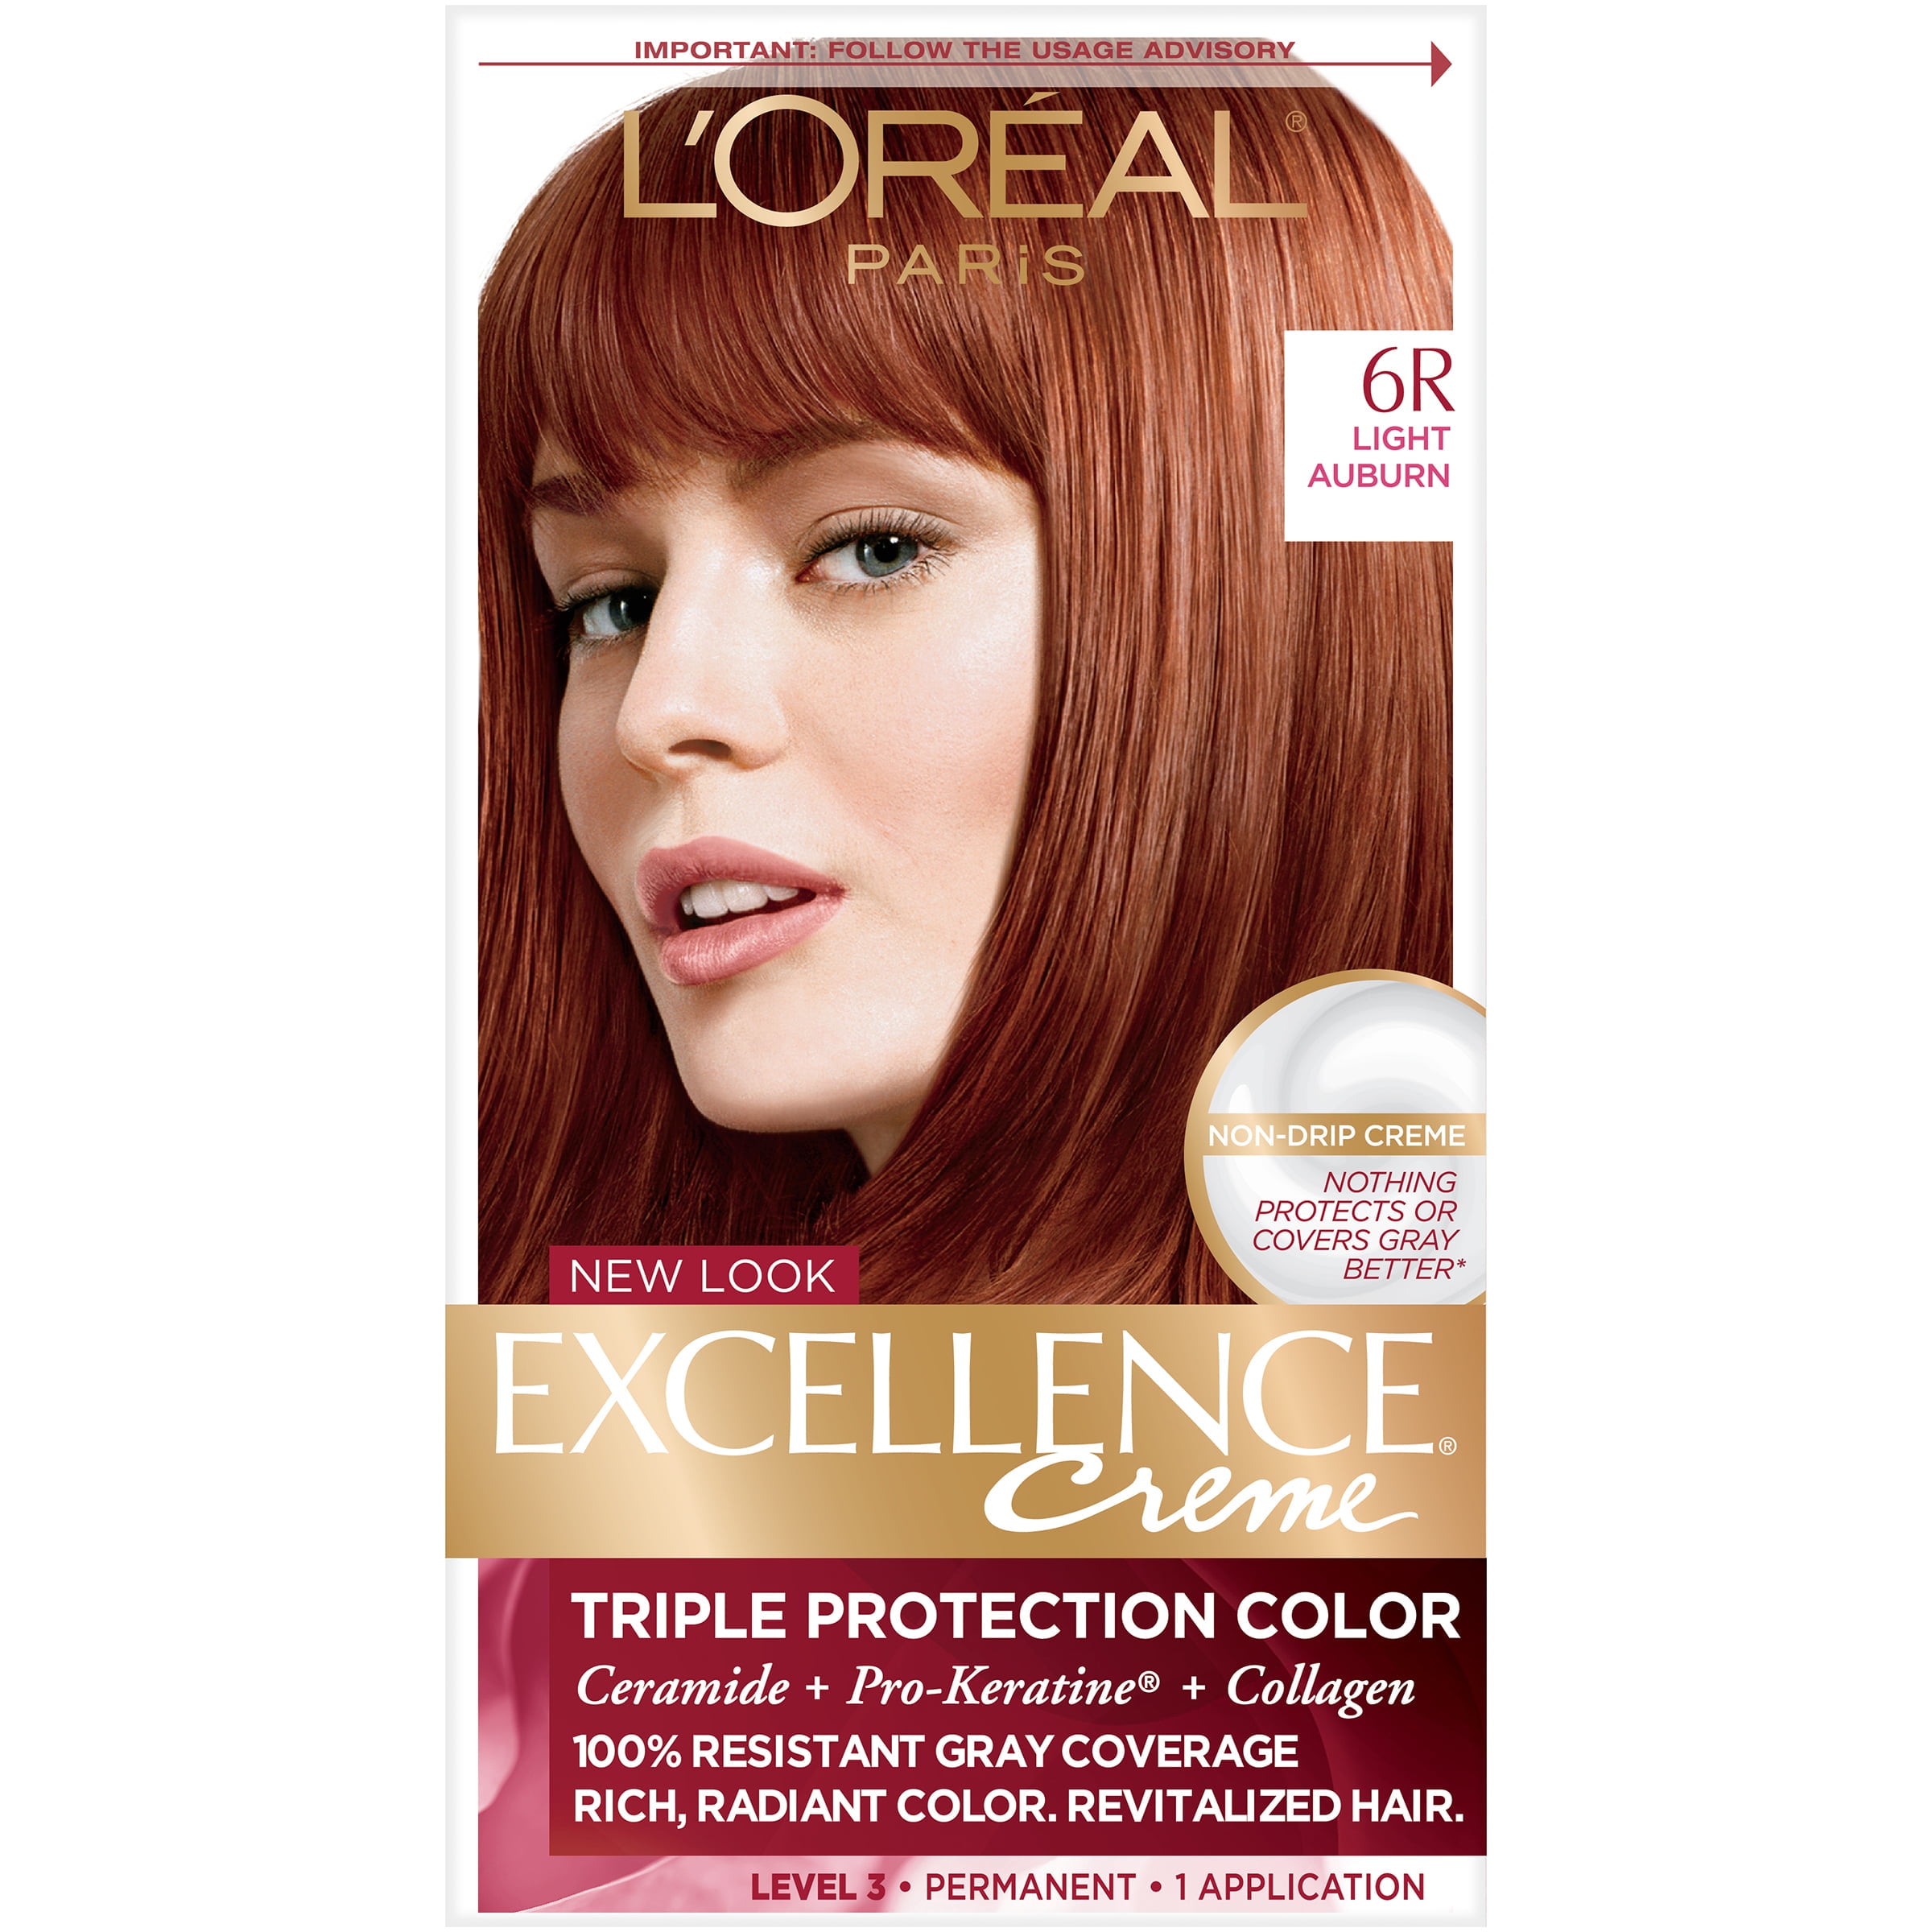 L'Oreal Paris Excellence Creme Permanent Hair Color, 6R Light Auburn -  